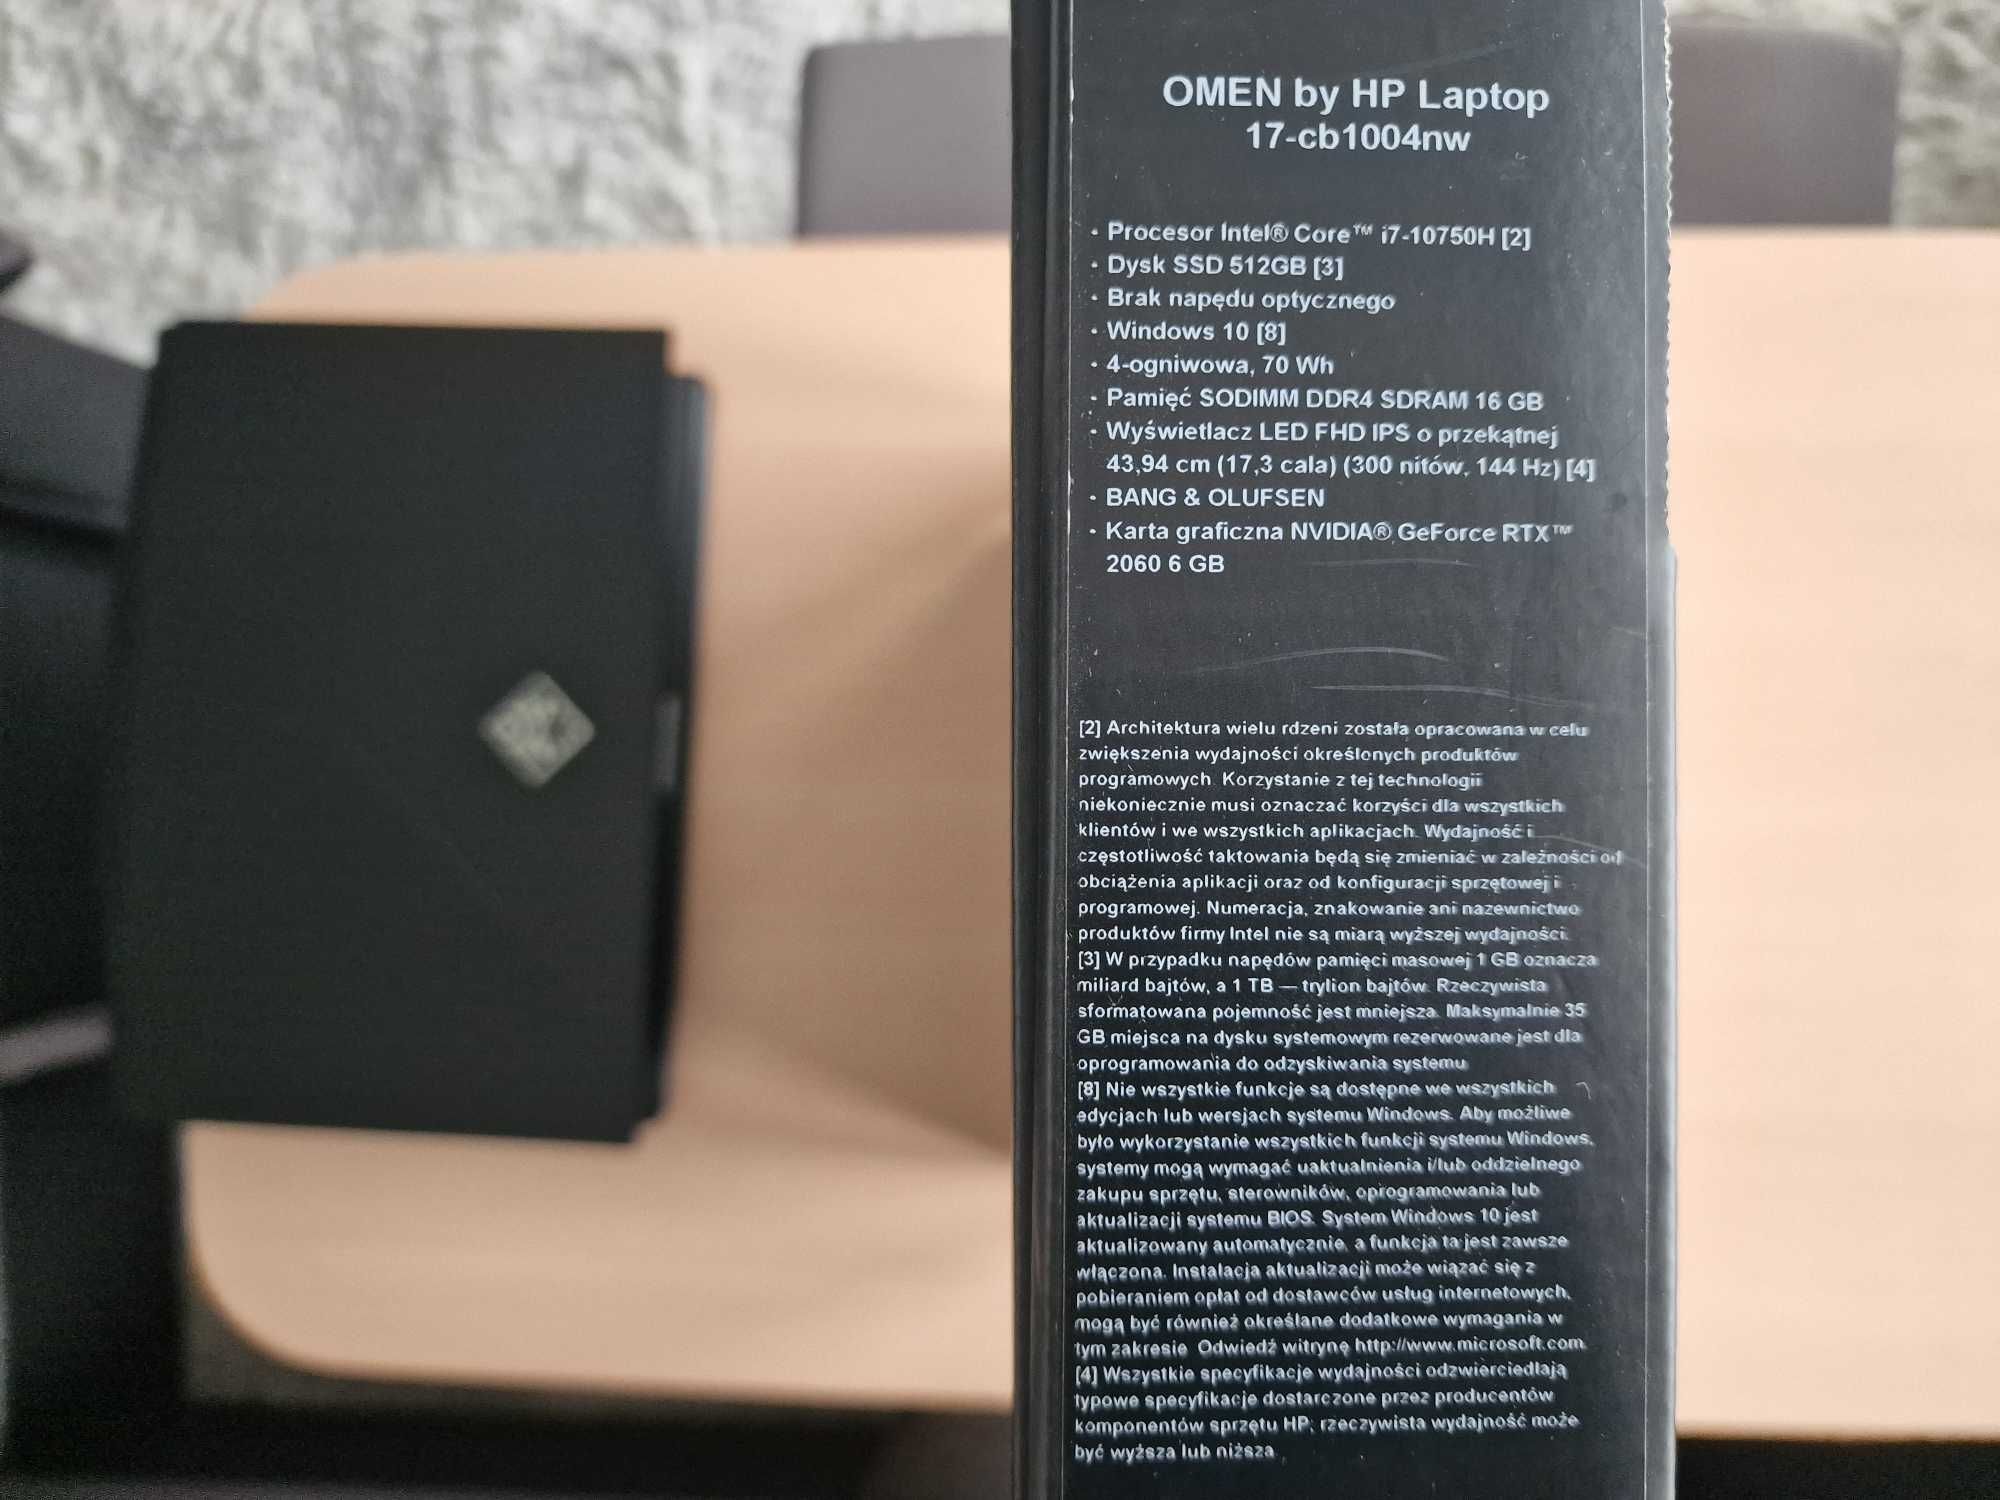 Sprzedam laptop marki HP Omen 17,3 cala w super stanie, jak nowy.